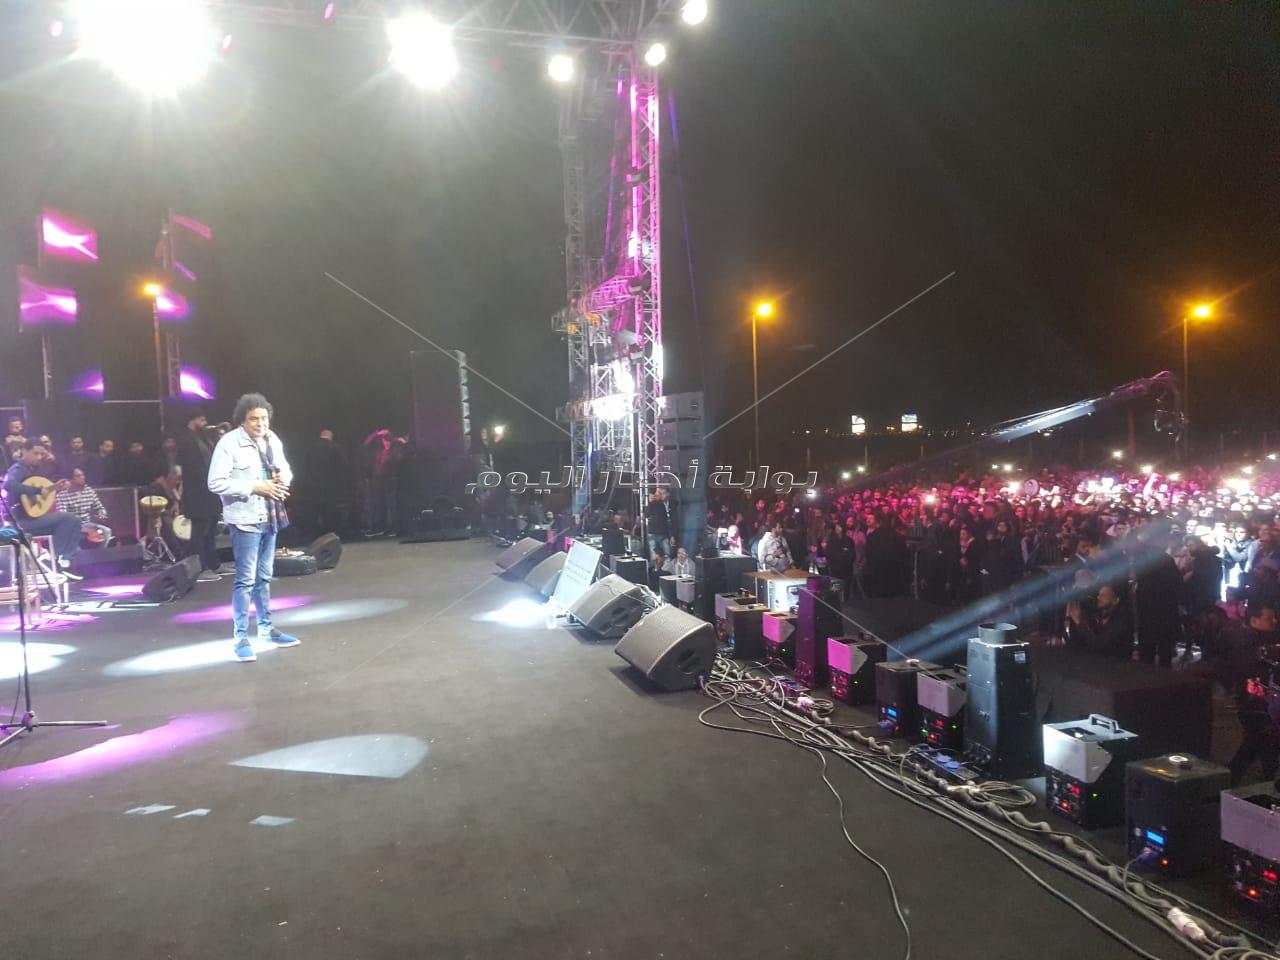 منير يشعل حفل القاهرة الجديدة بأغاني ألبومه الجديد